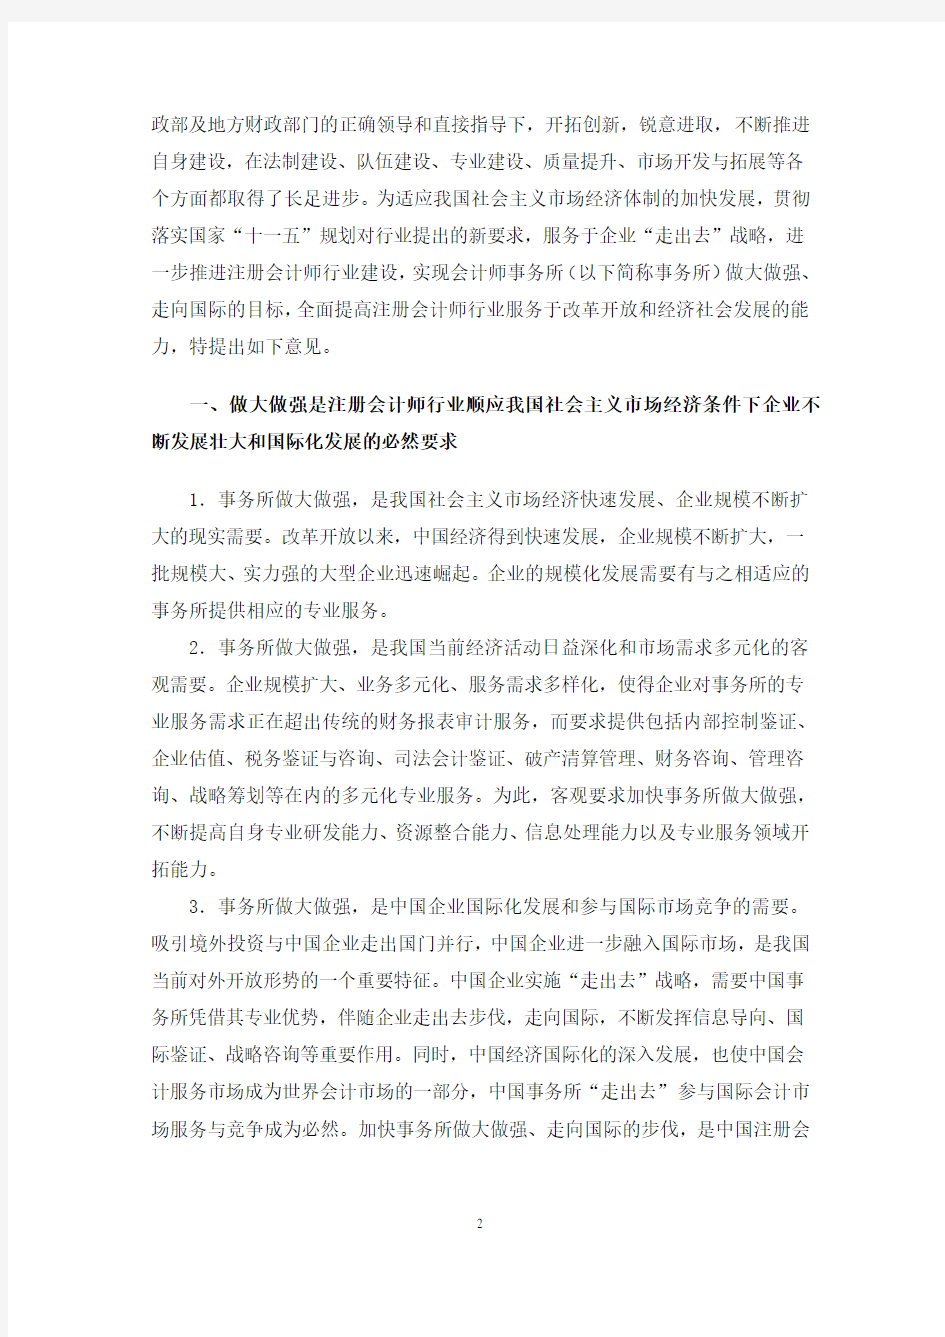 中国注册会计师协会关于印发《中国注册